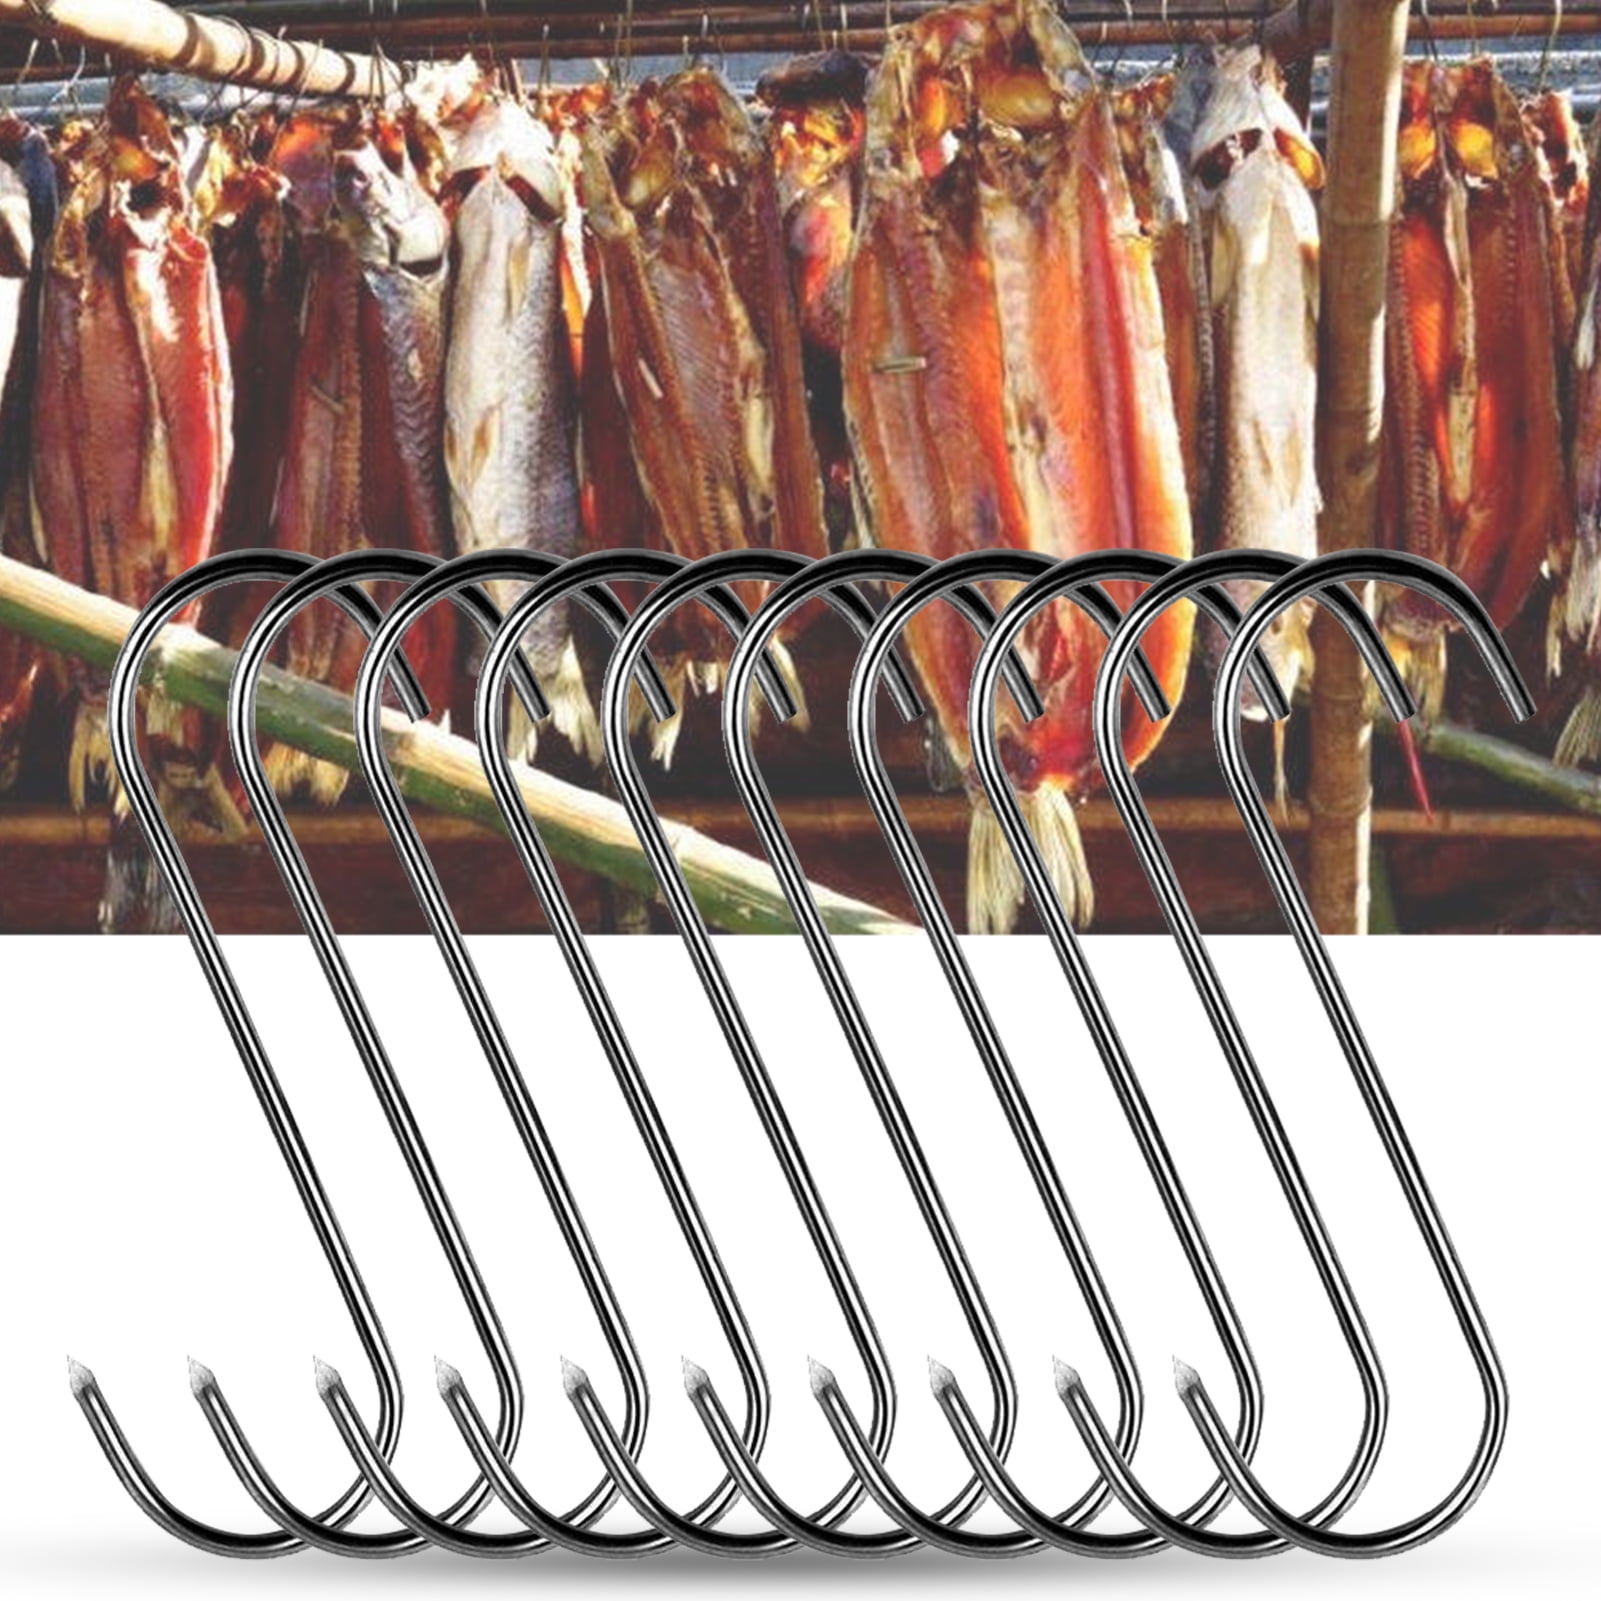 Meat Hooks,S Shaped Meat Hooks,Stainless Steel Bacon Hanger,Smoker Hooks Roast Duck Bacon Hooks Meat Hooks for Smoking Hanging Bacon Hams Meat Cooking BBQ Grill